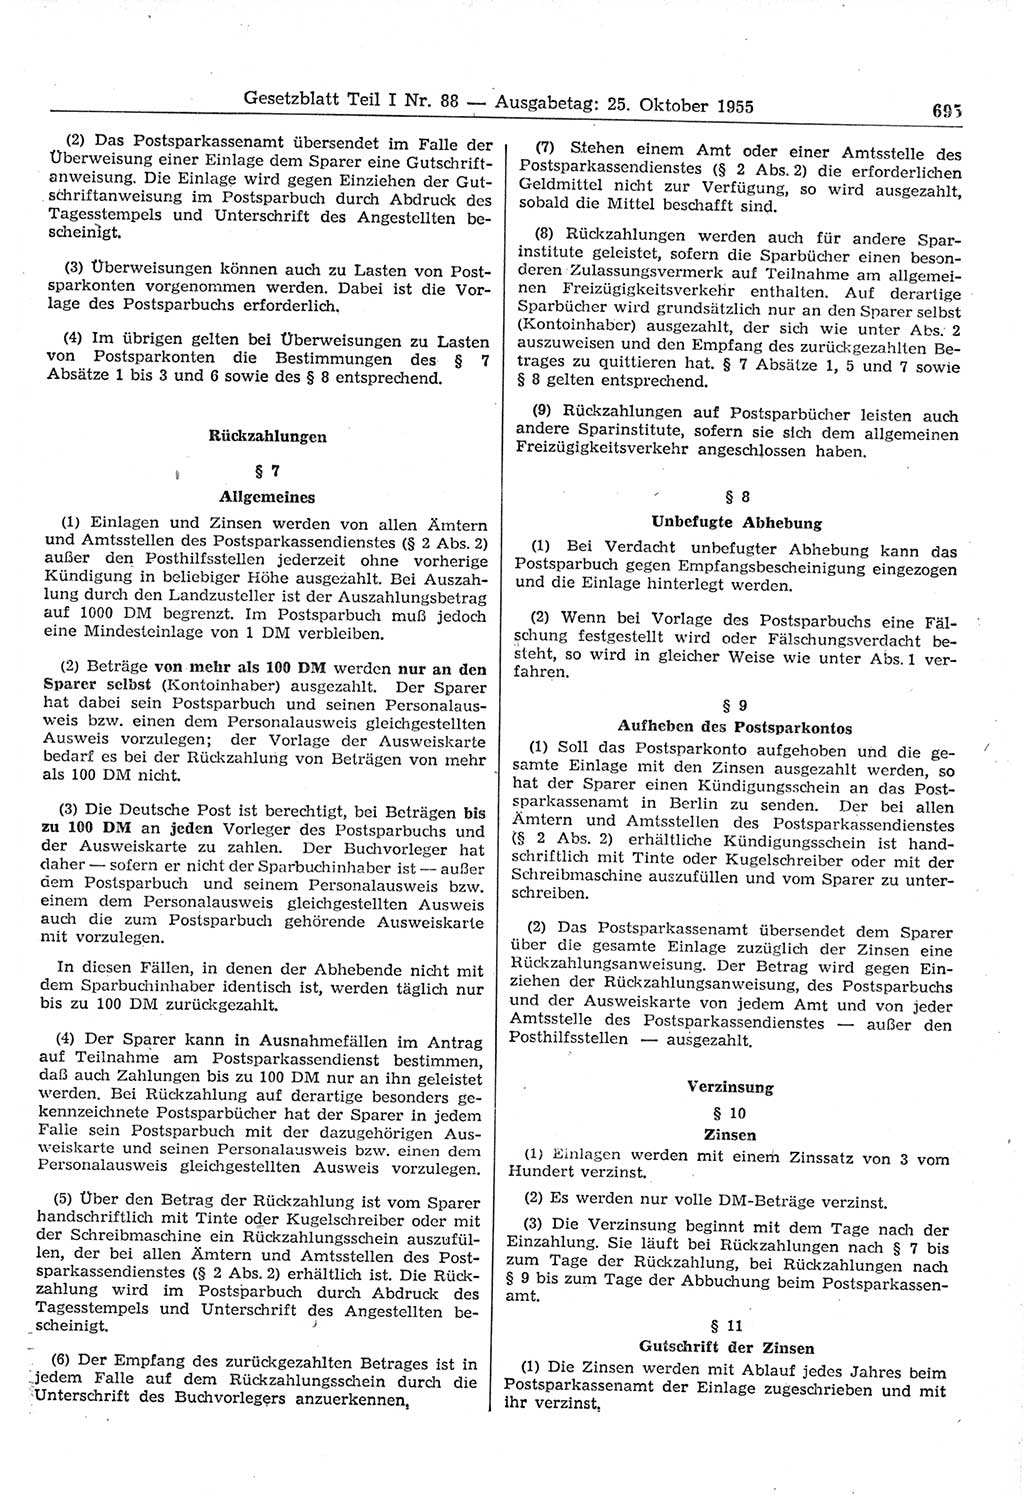 Gesetzblatt (GBl.) der Deutschen Demokratischen Republik (DDR) Teil Ⅰ 1955, Seite 695 (GBl. DDR Ⅰ 1955, S. 695)